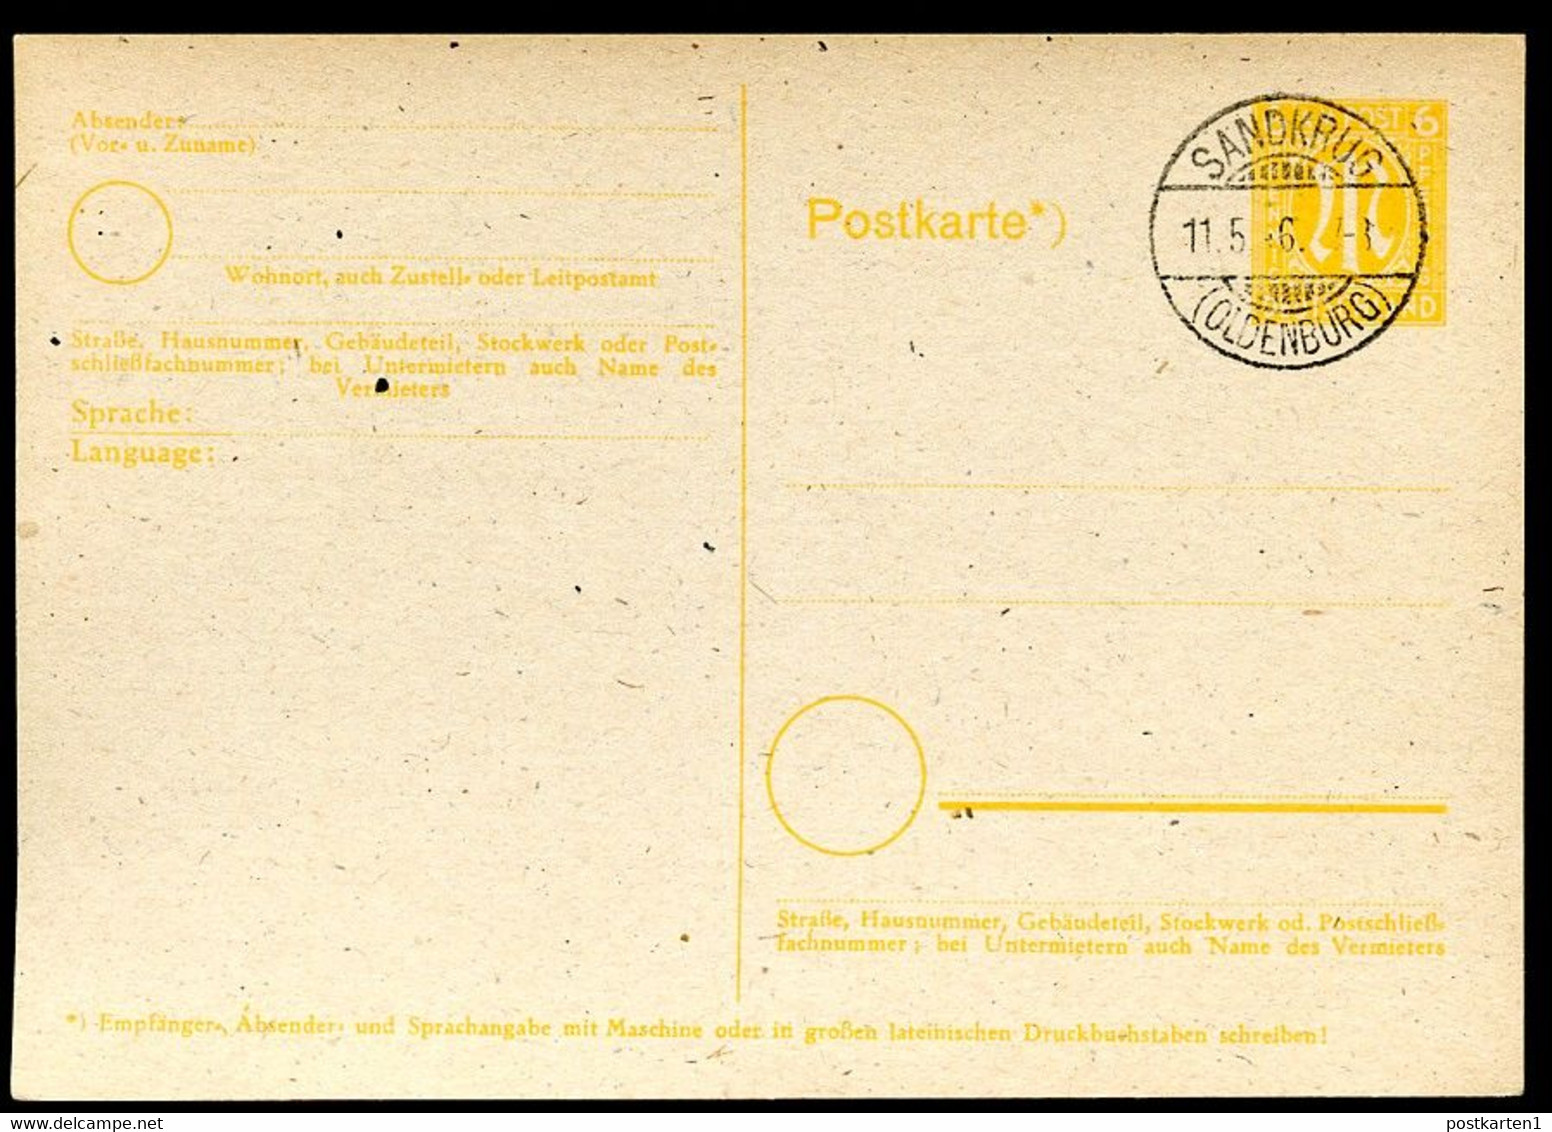 BRITISCHE ZONE P 905 Postkarte Sandkrug (Hatten) 11.5.1946 - Provisional Issues British Zone